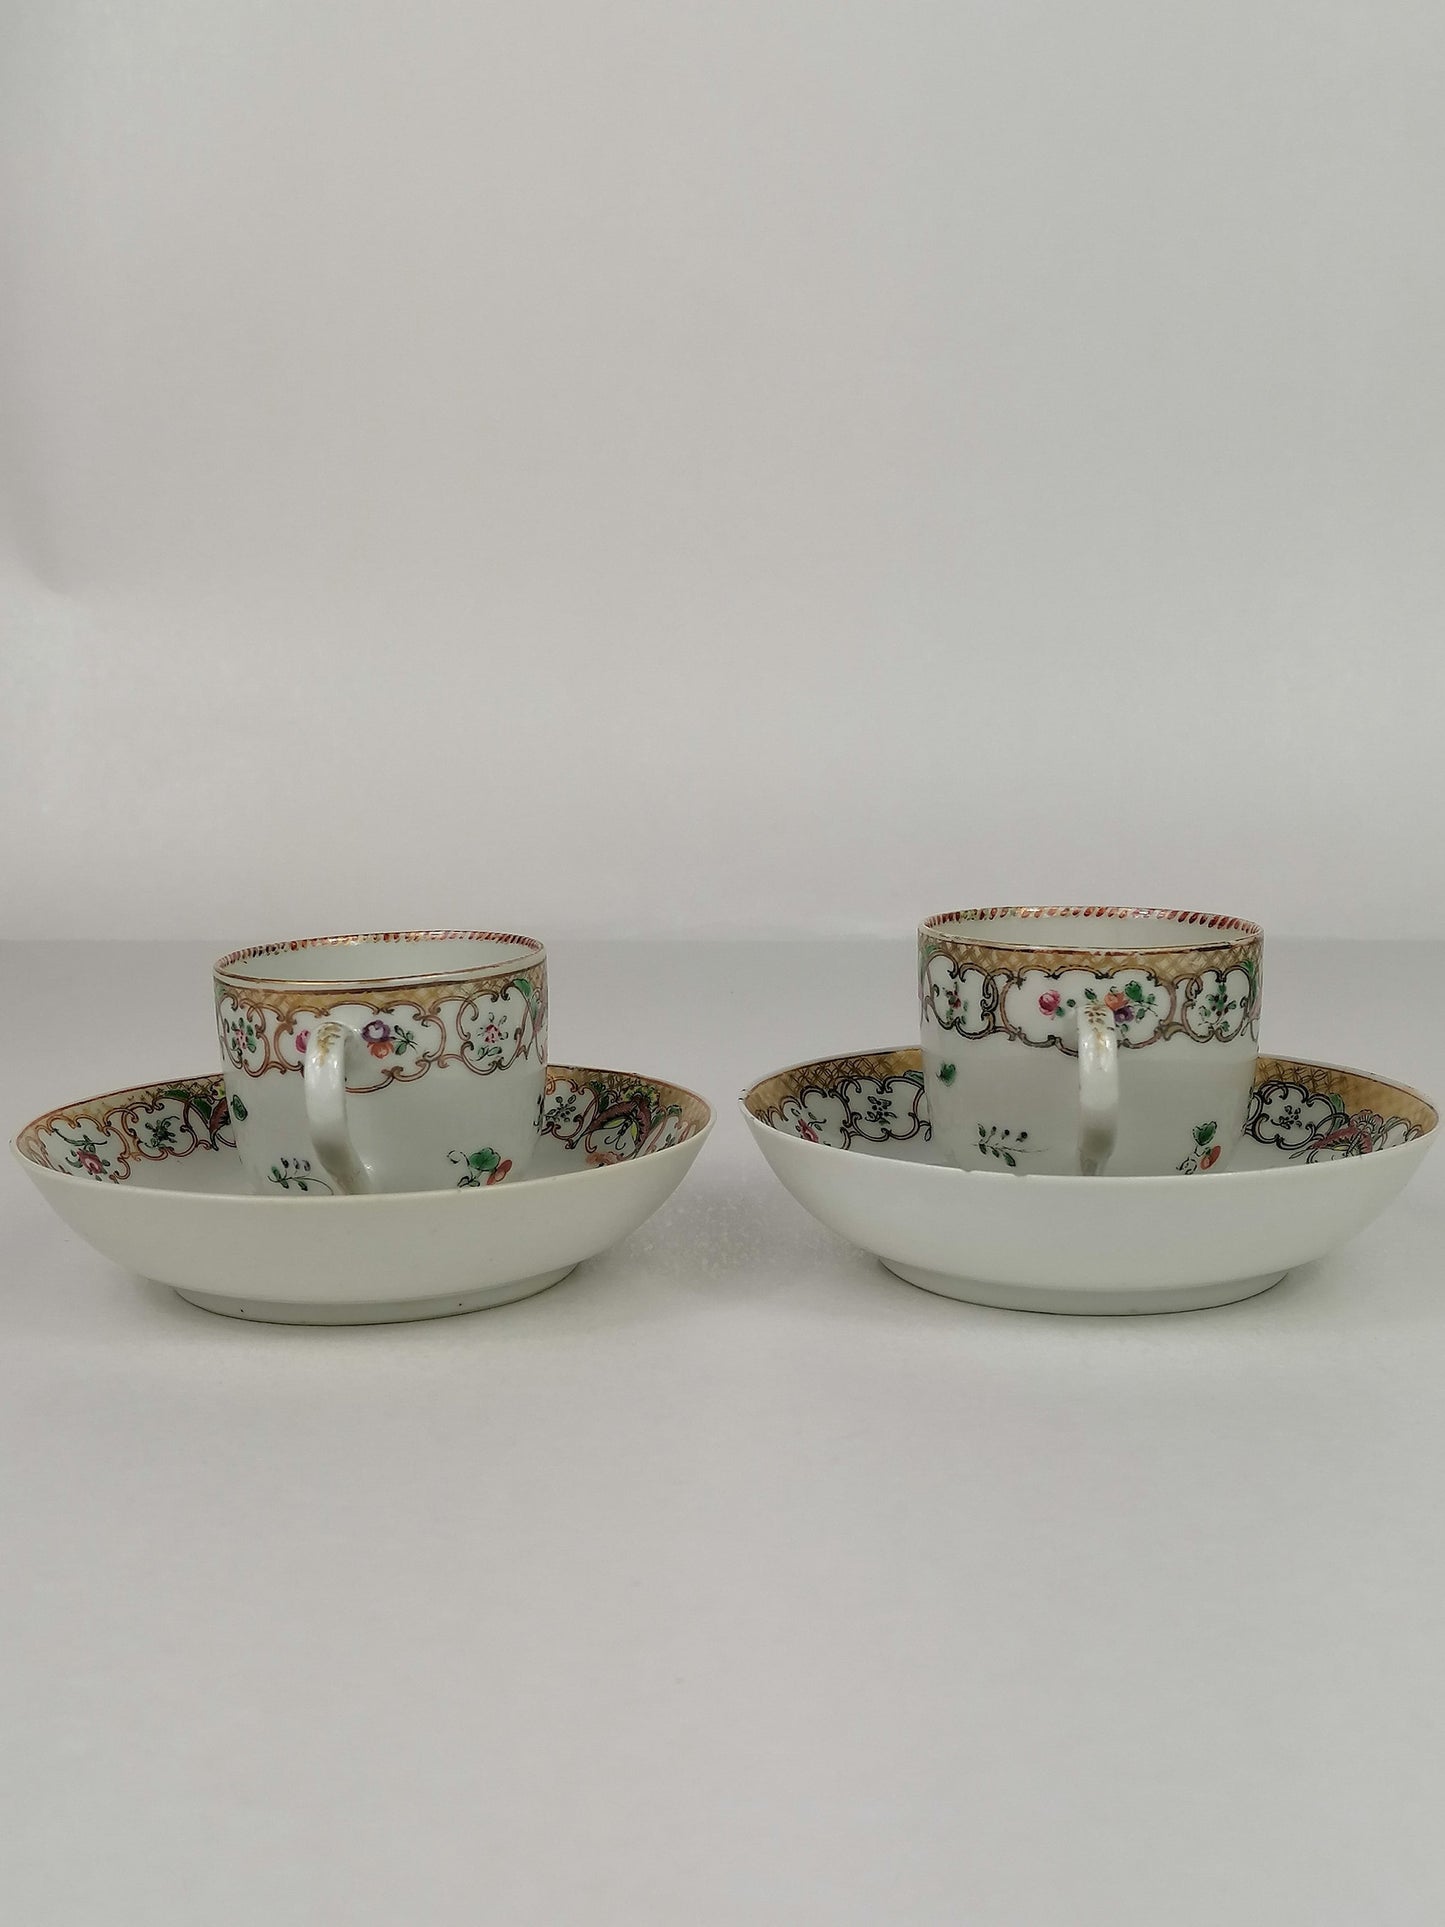 Antigo conjunto de 2 xícaras e pires chineses // Século XVIII // Dinastia Qing